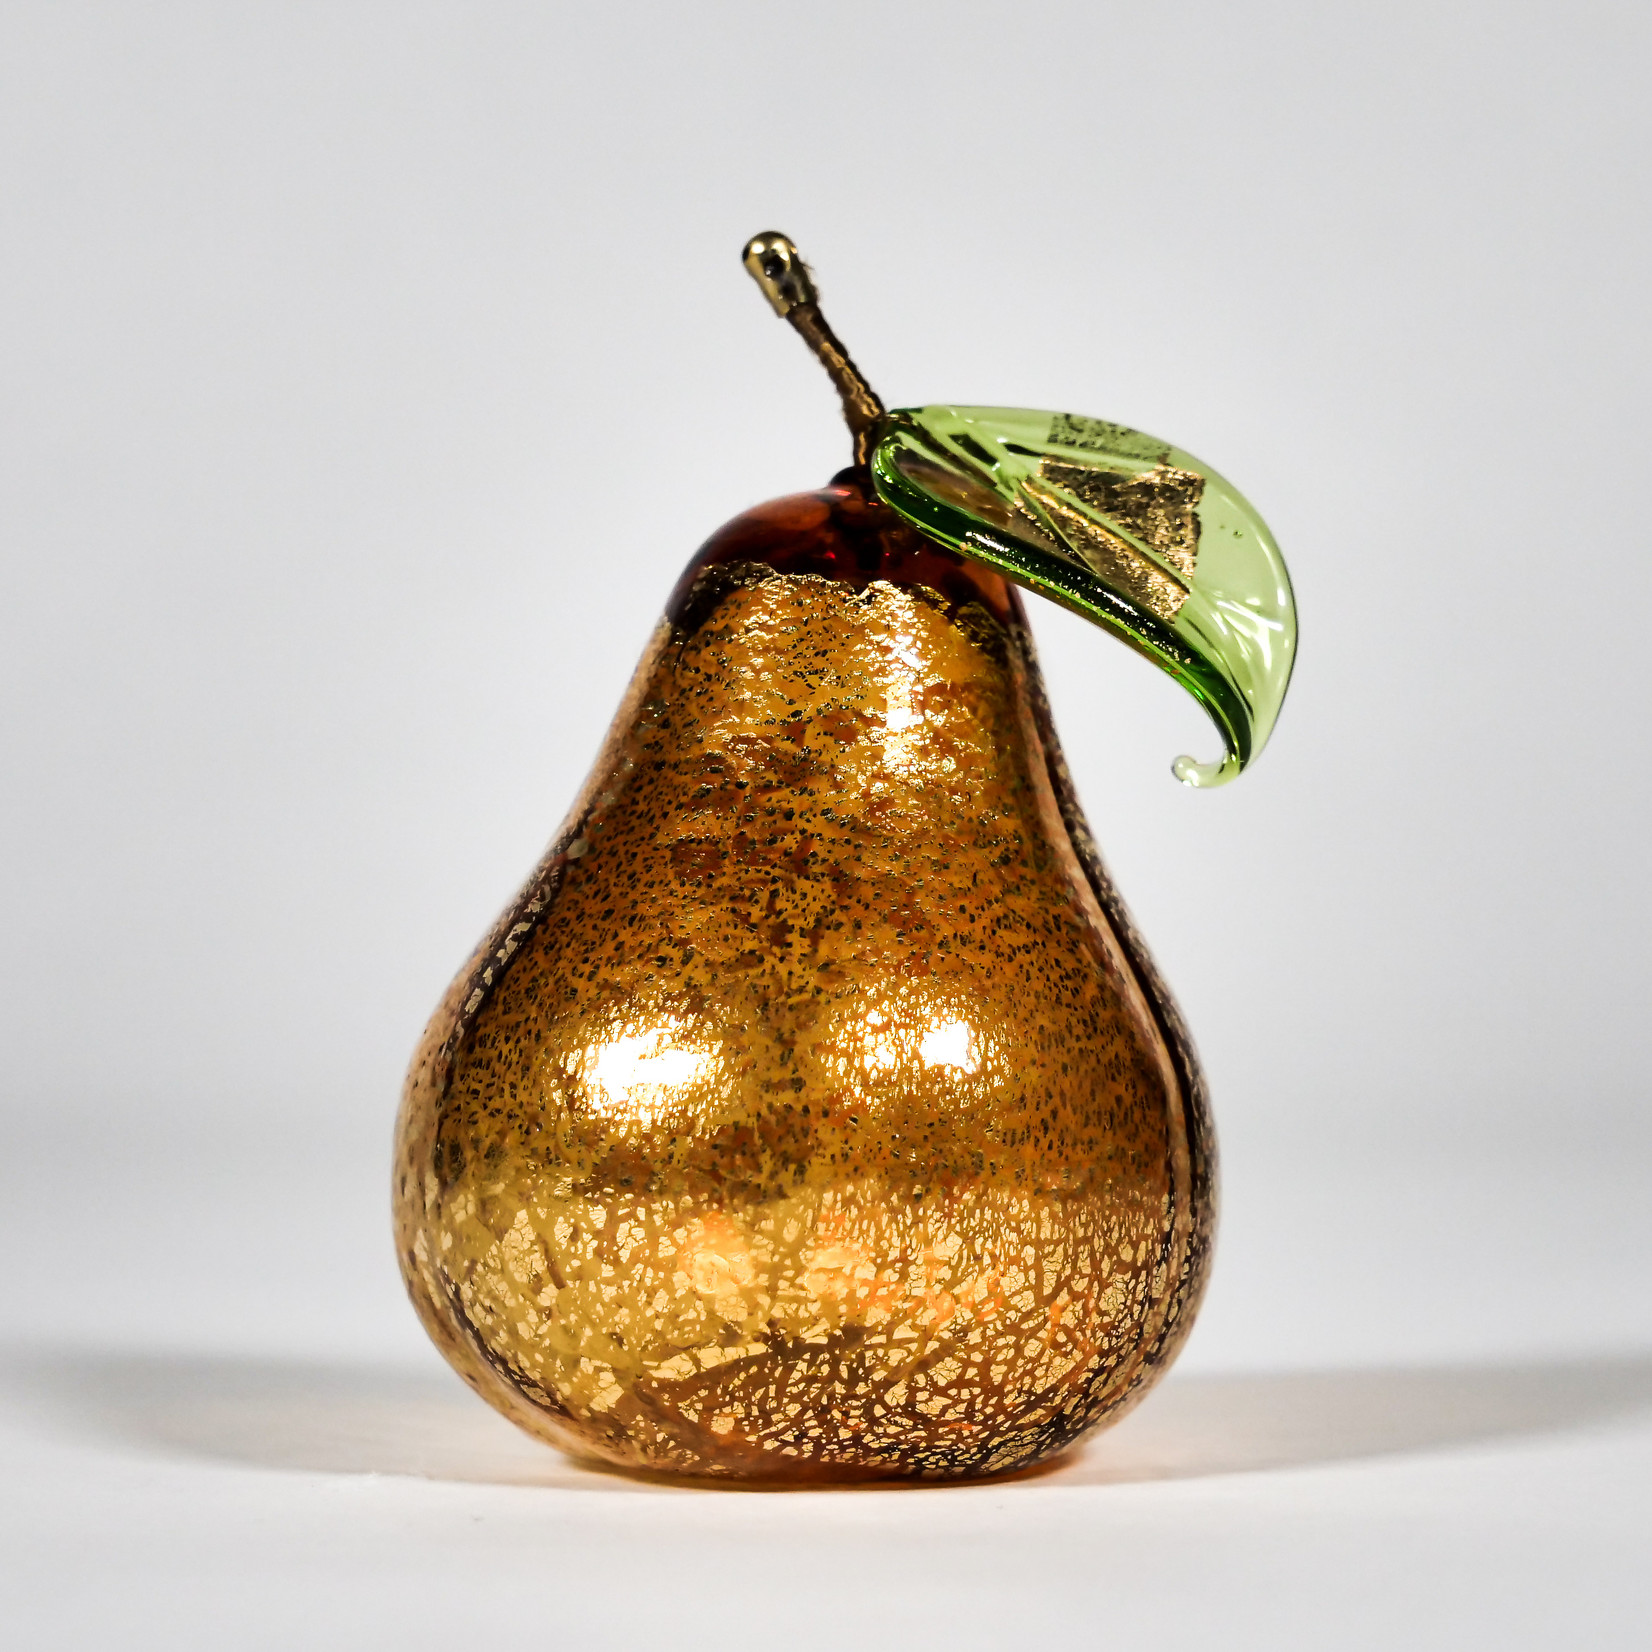 Via Graceffo Collection Via Graceffo: Murano Glass Pear